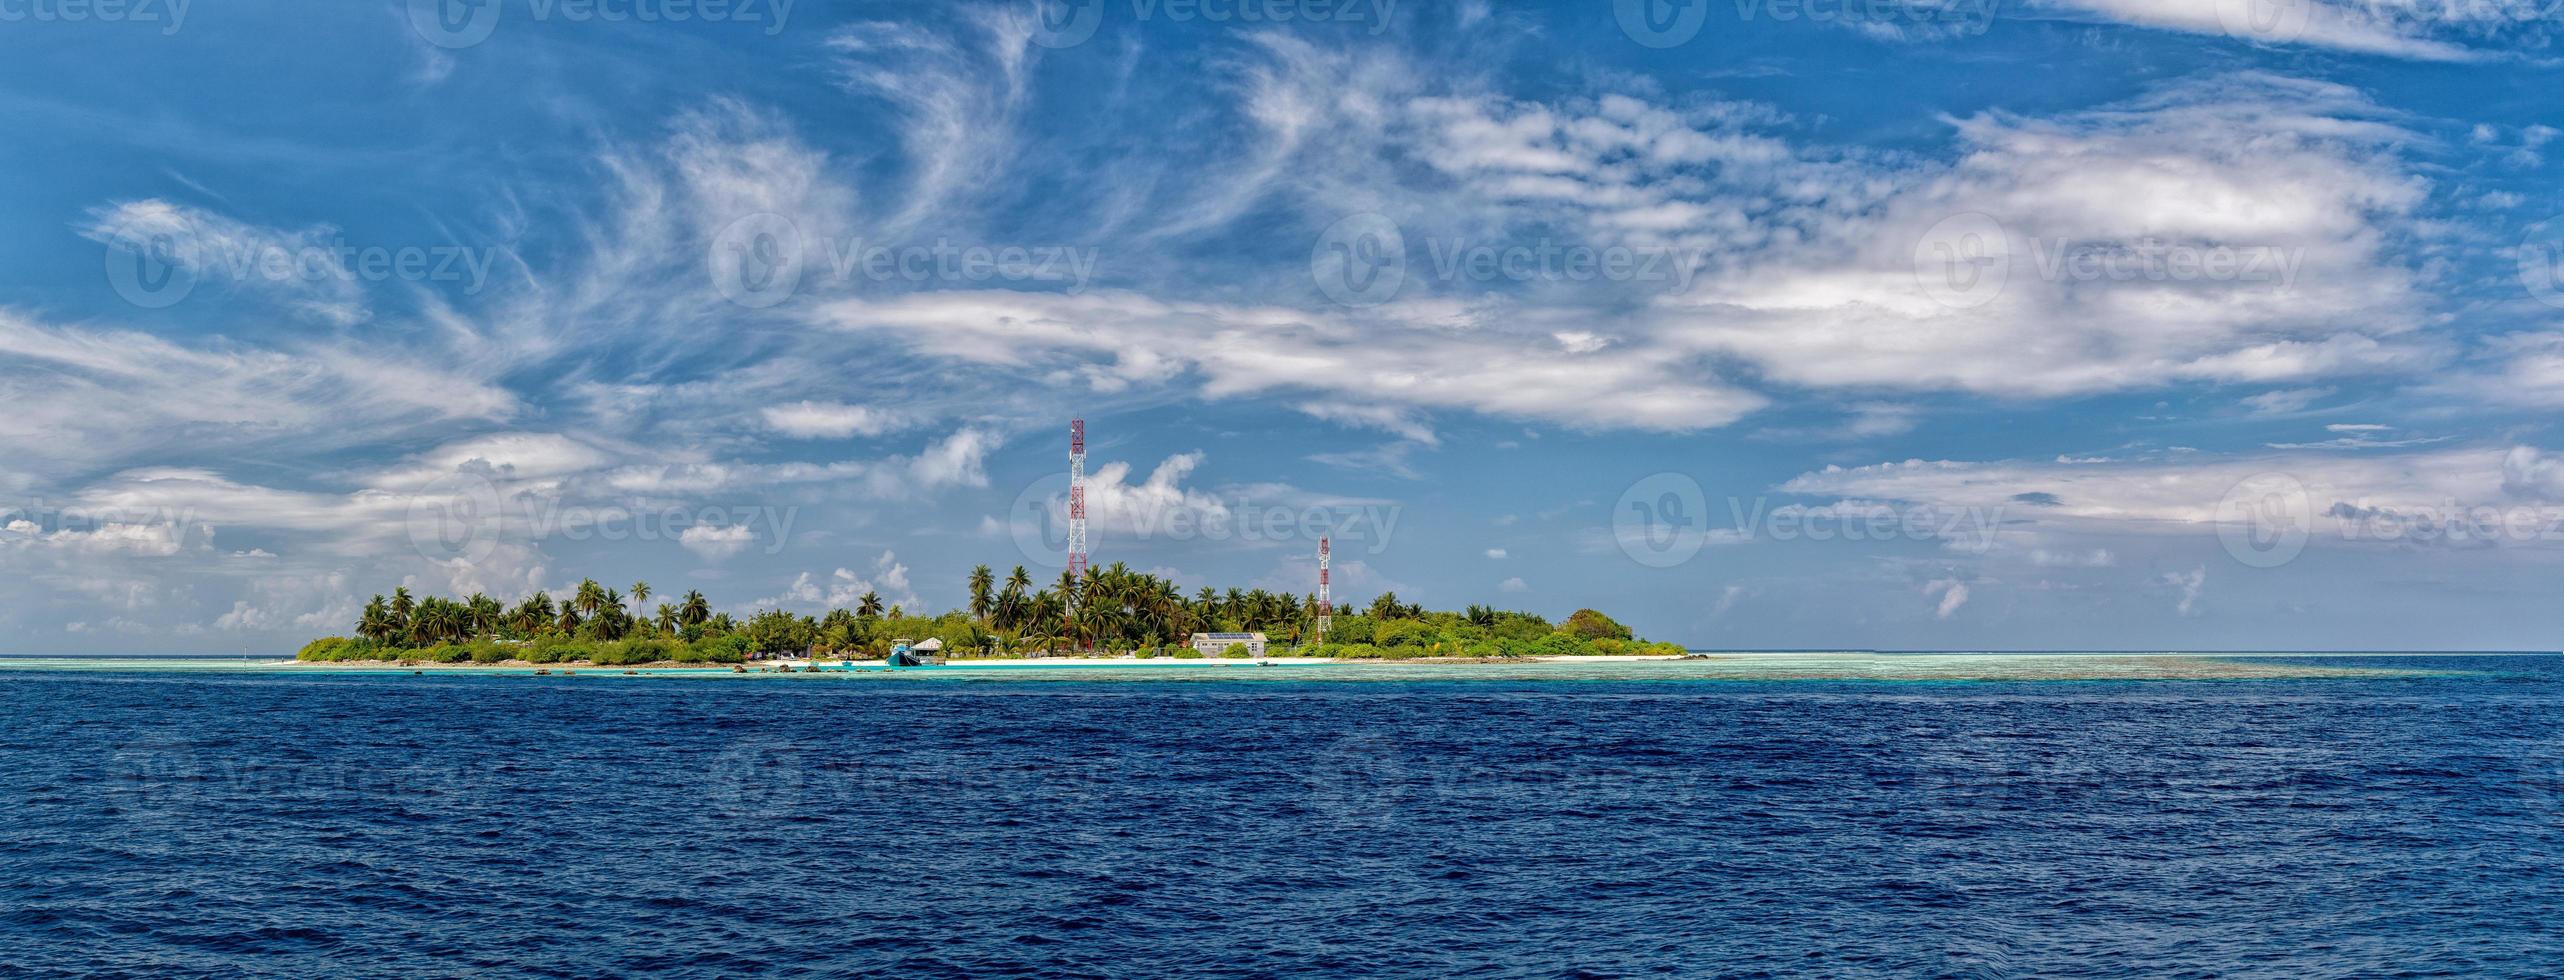 malediven tropisches paradies strandlandschaft foto